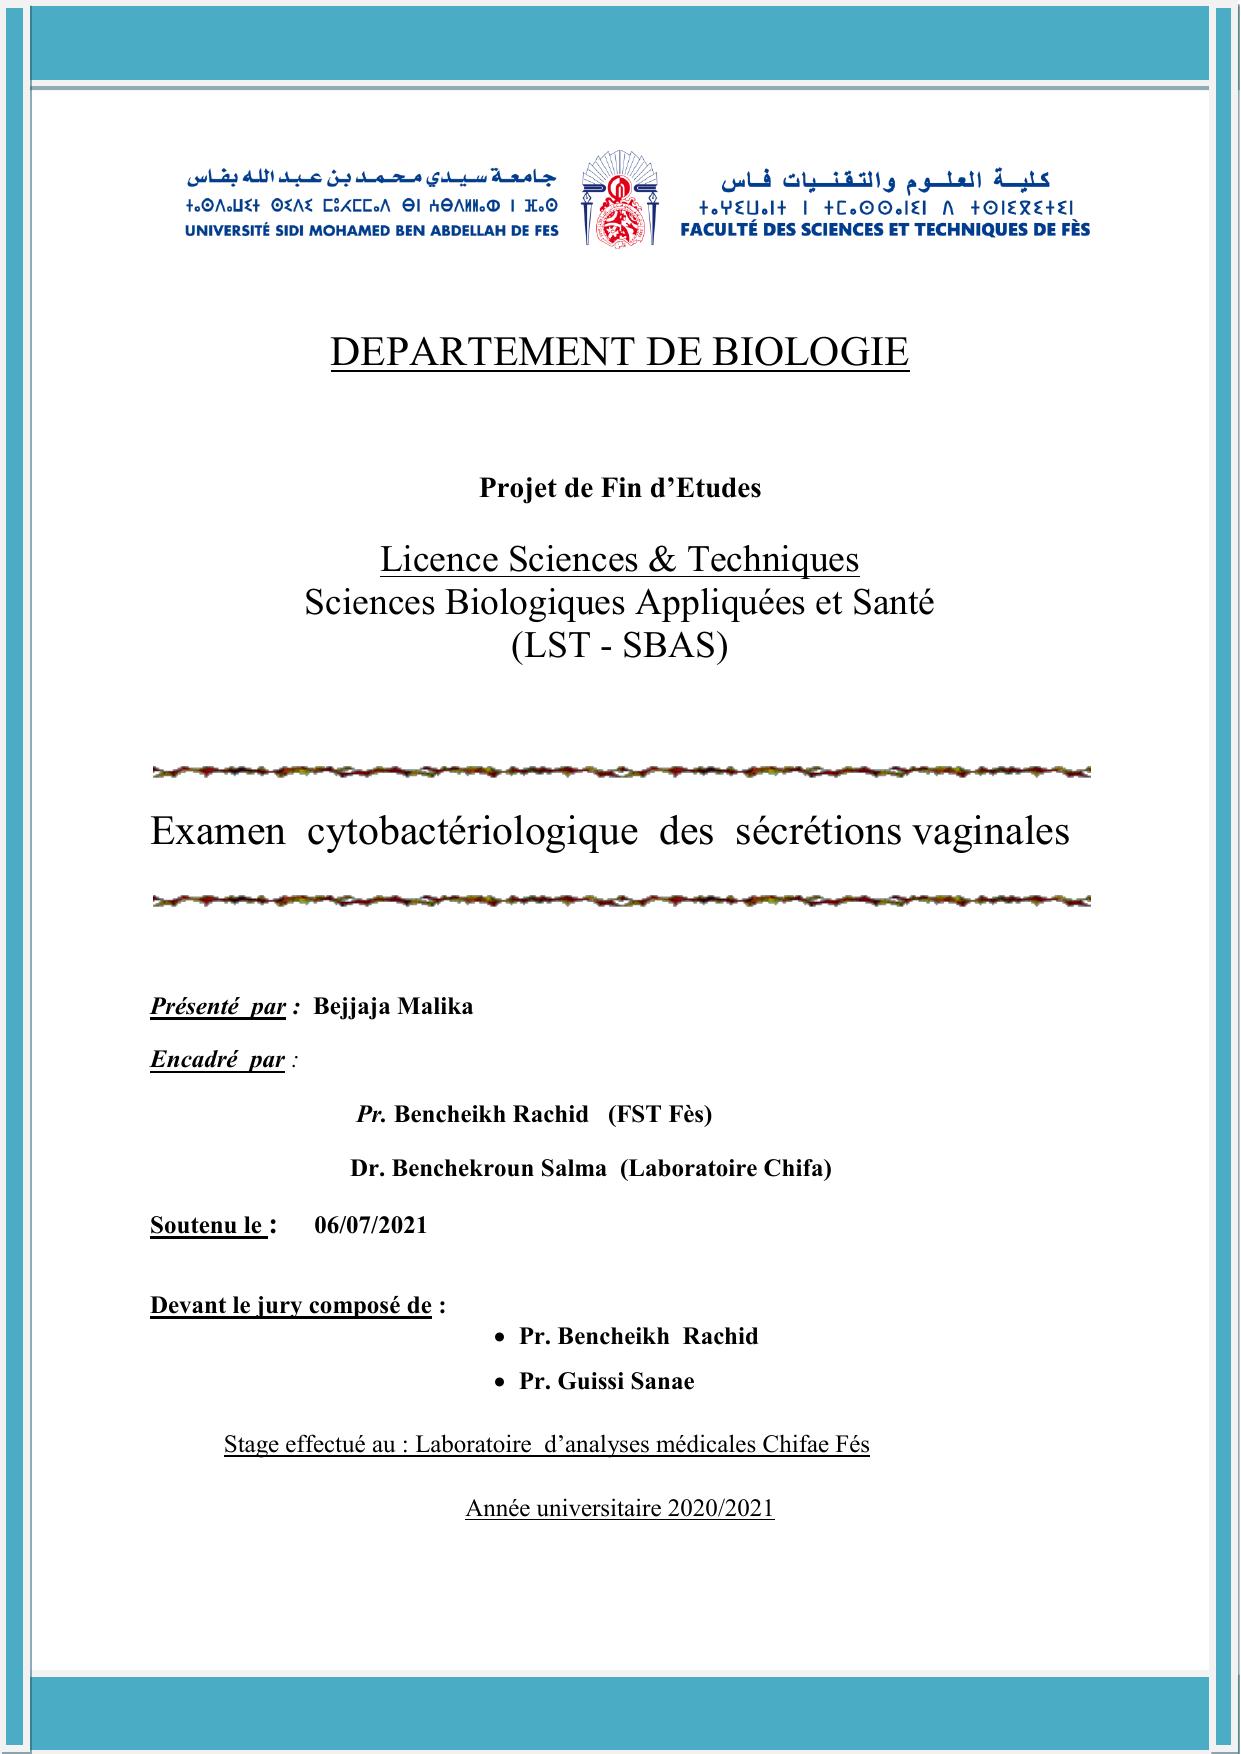 Examen cytobacteriologie des secretion vaginale (2) (2)